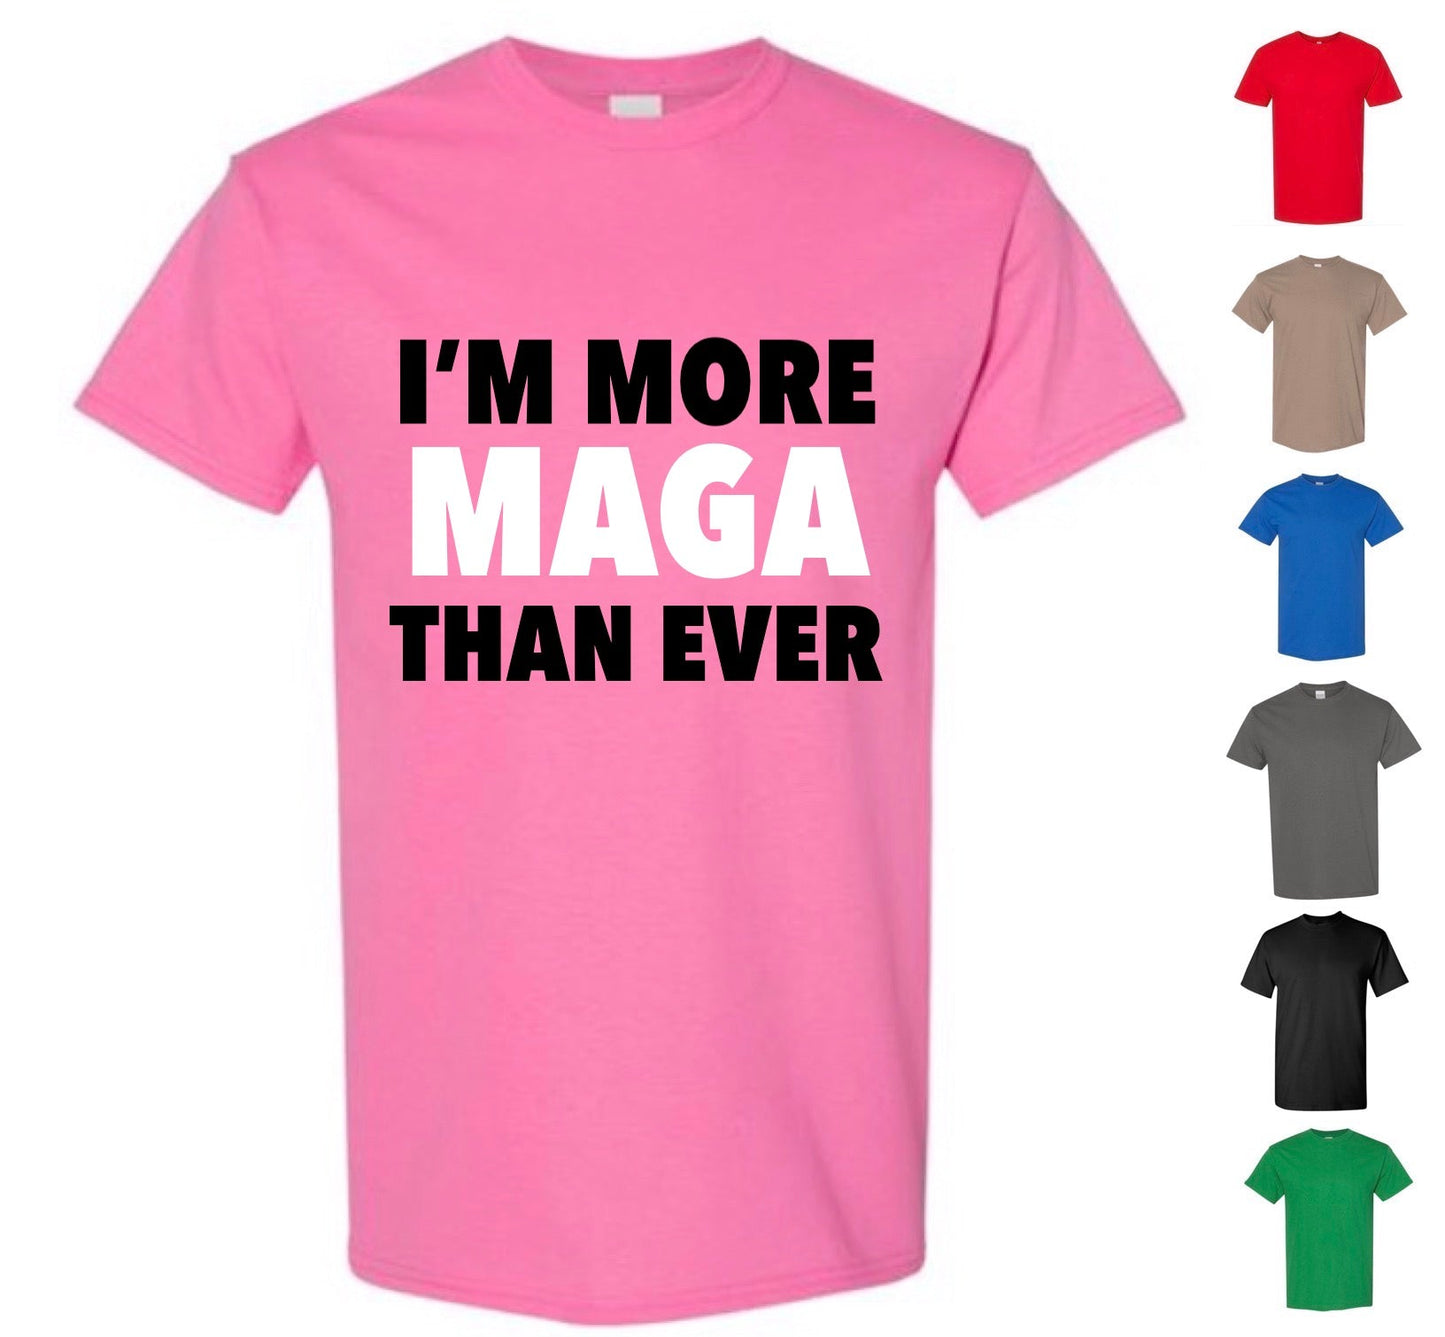 I'm More MAGA Than Ever Shirt — Free Shipping